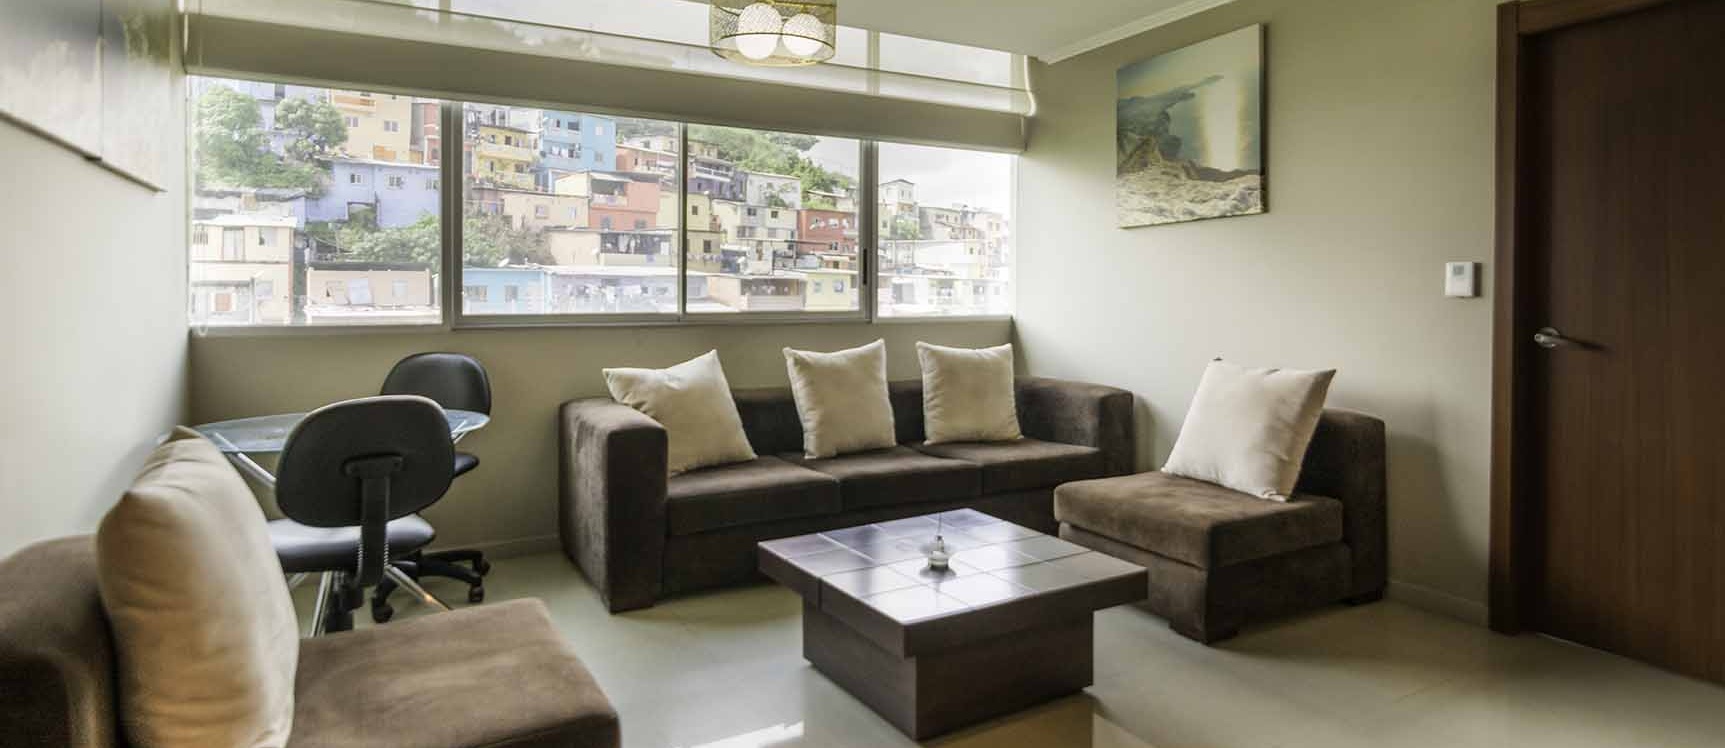 GeoBienes - Departamento amoblado en alquiler - Riverfront I - Plusvalia Guayaquil Casas de venta y alquiler Inmobiliaria Ecuador